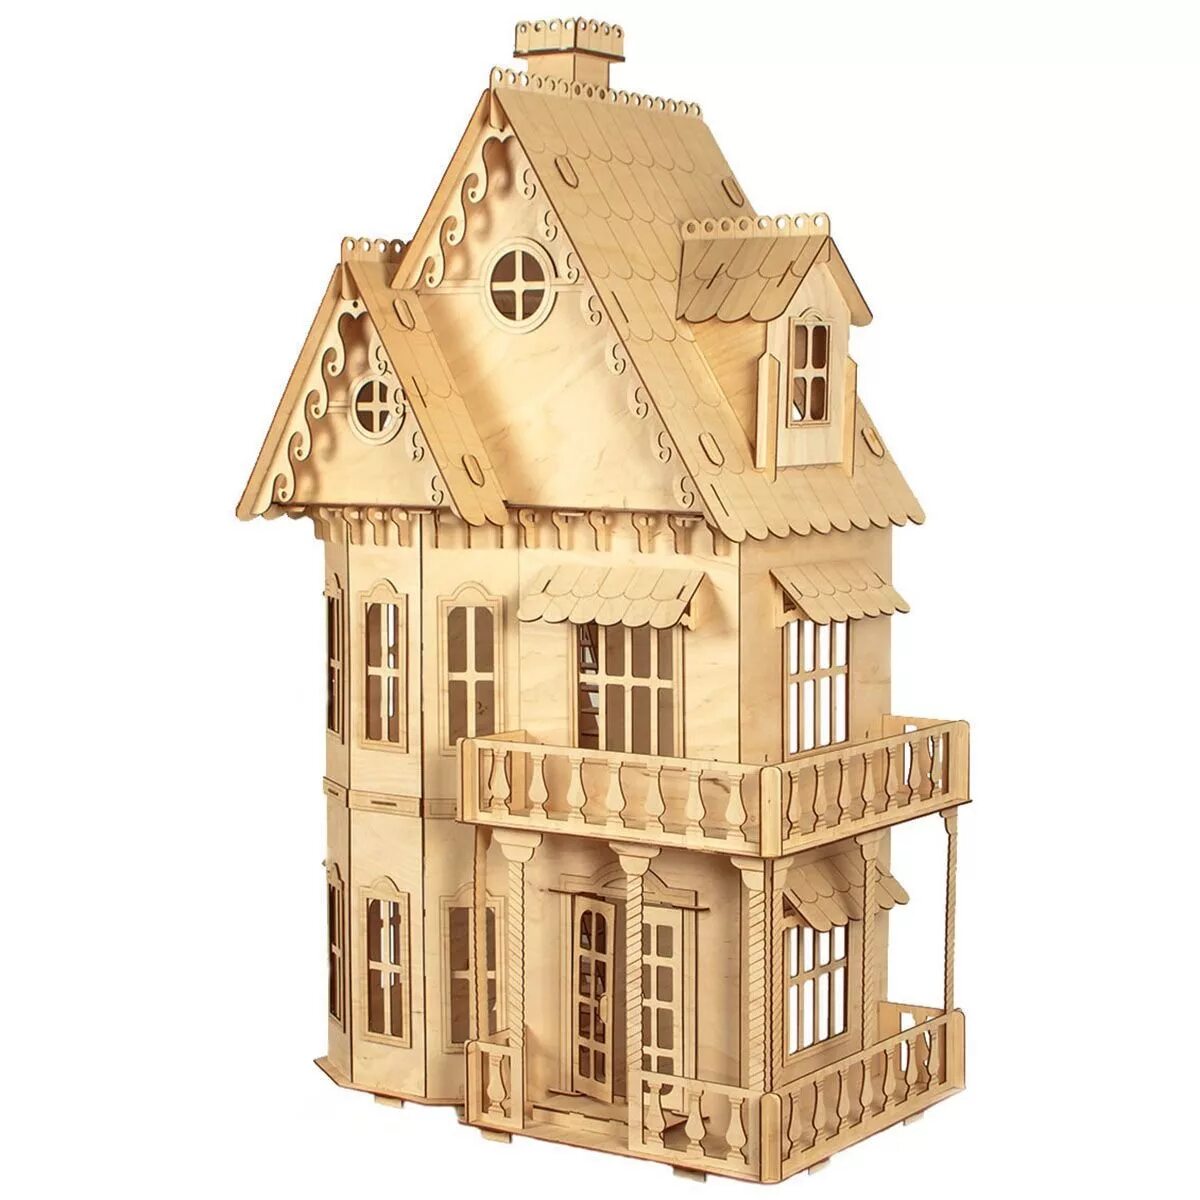 Сборные модели домов. Домик сборный деревянный. Модель домика. Деревянный конструктор дом. Сборная модель домика.